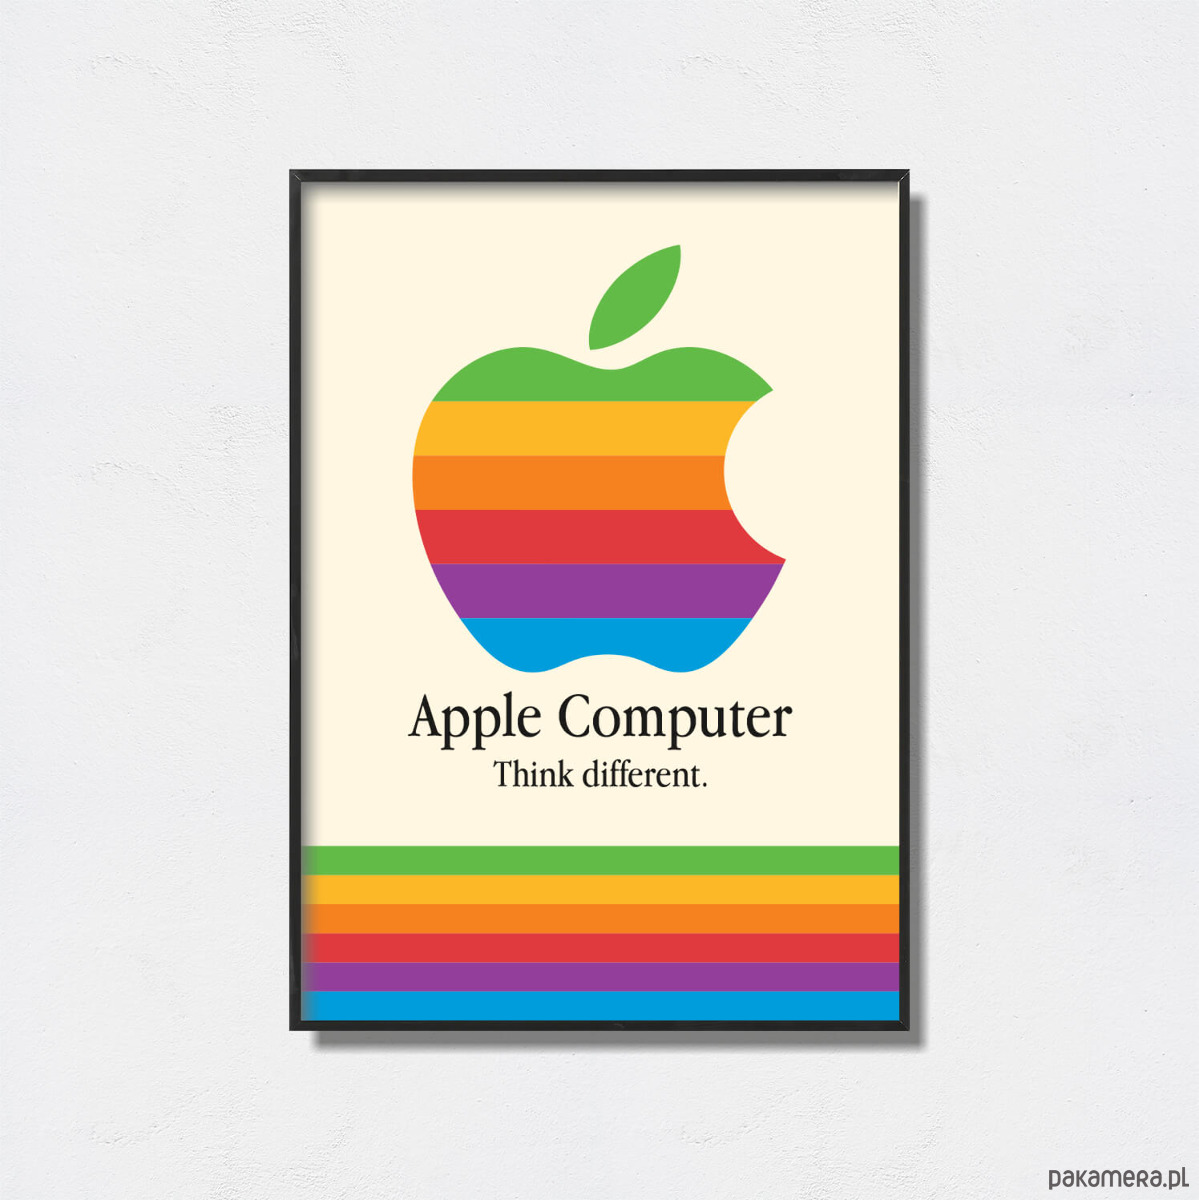 Apple Computers - Pakamera.pl